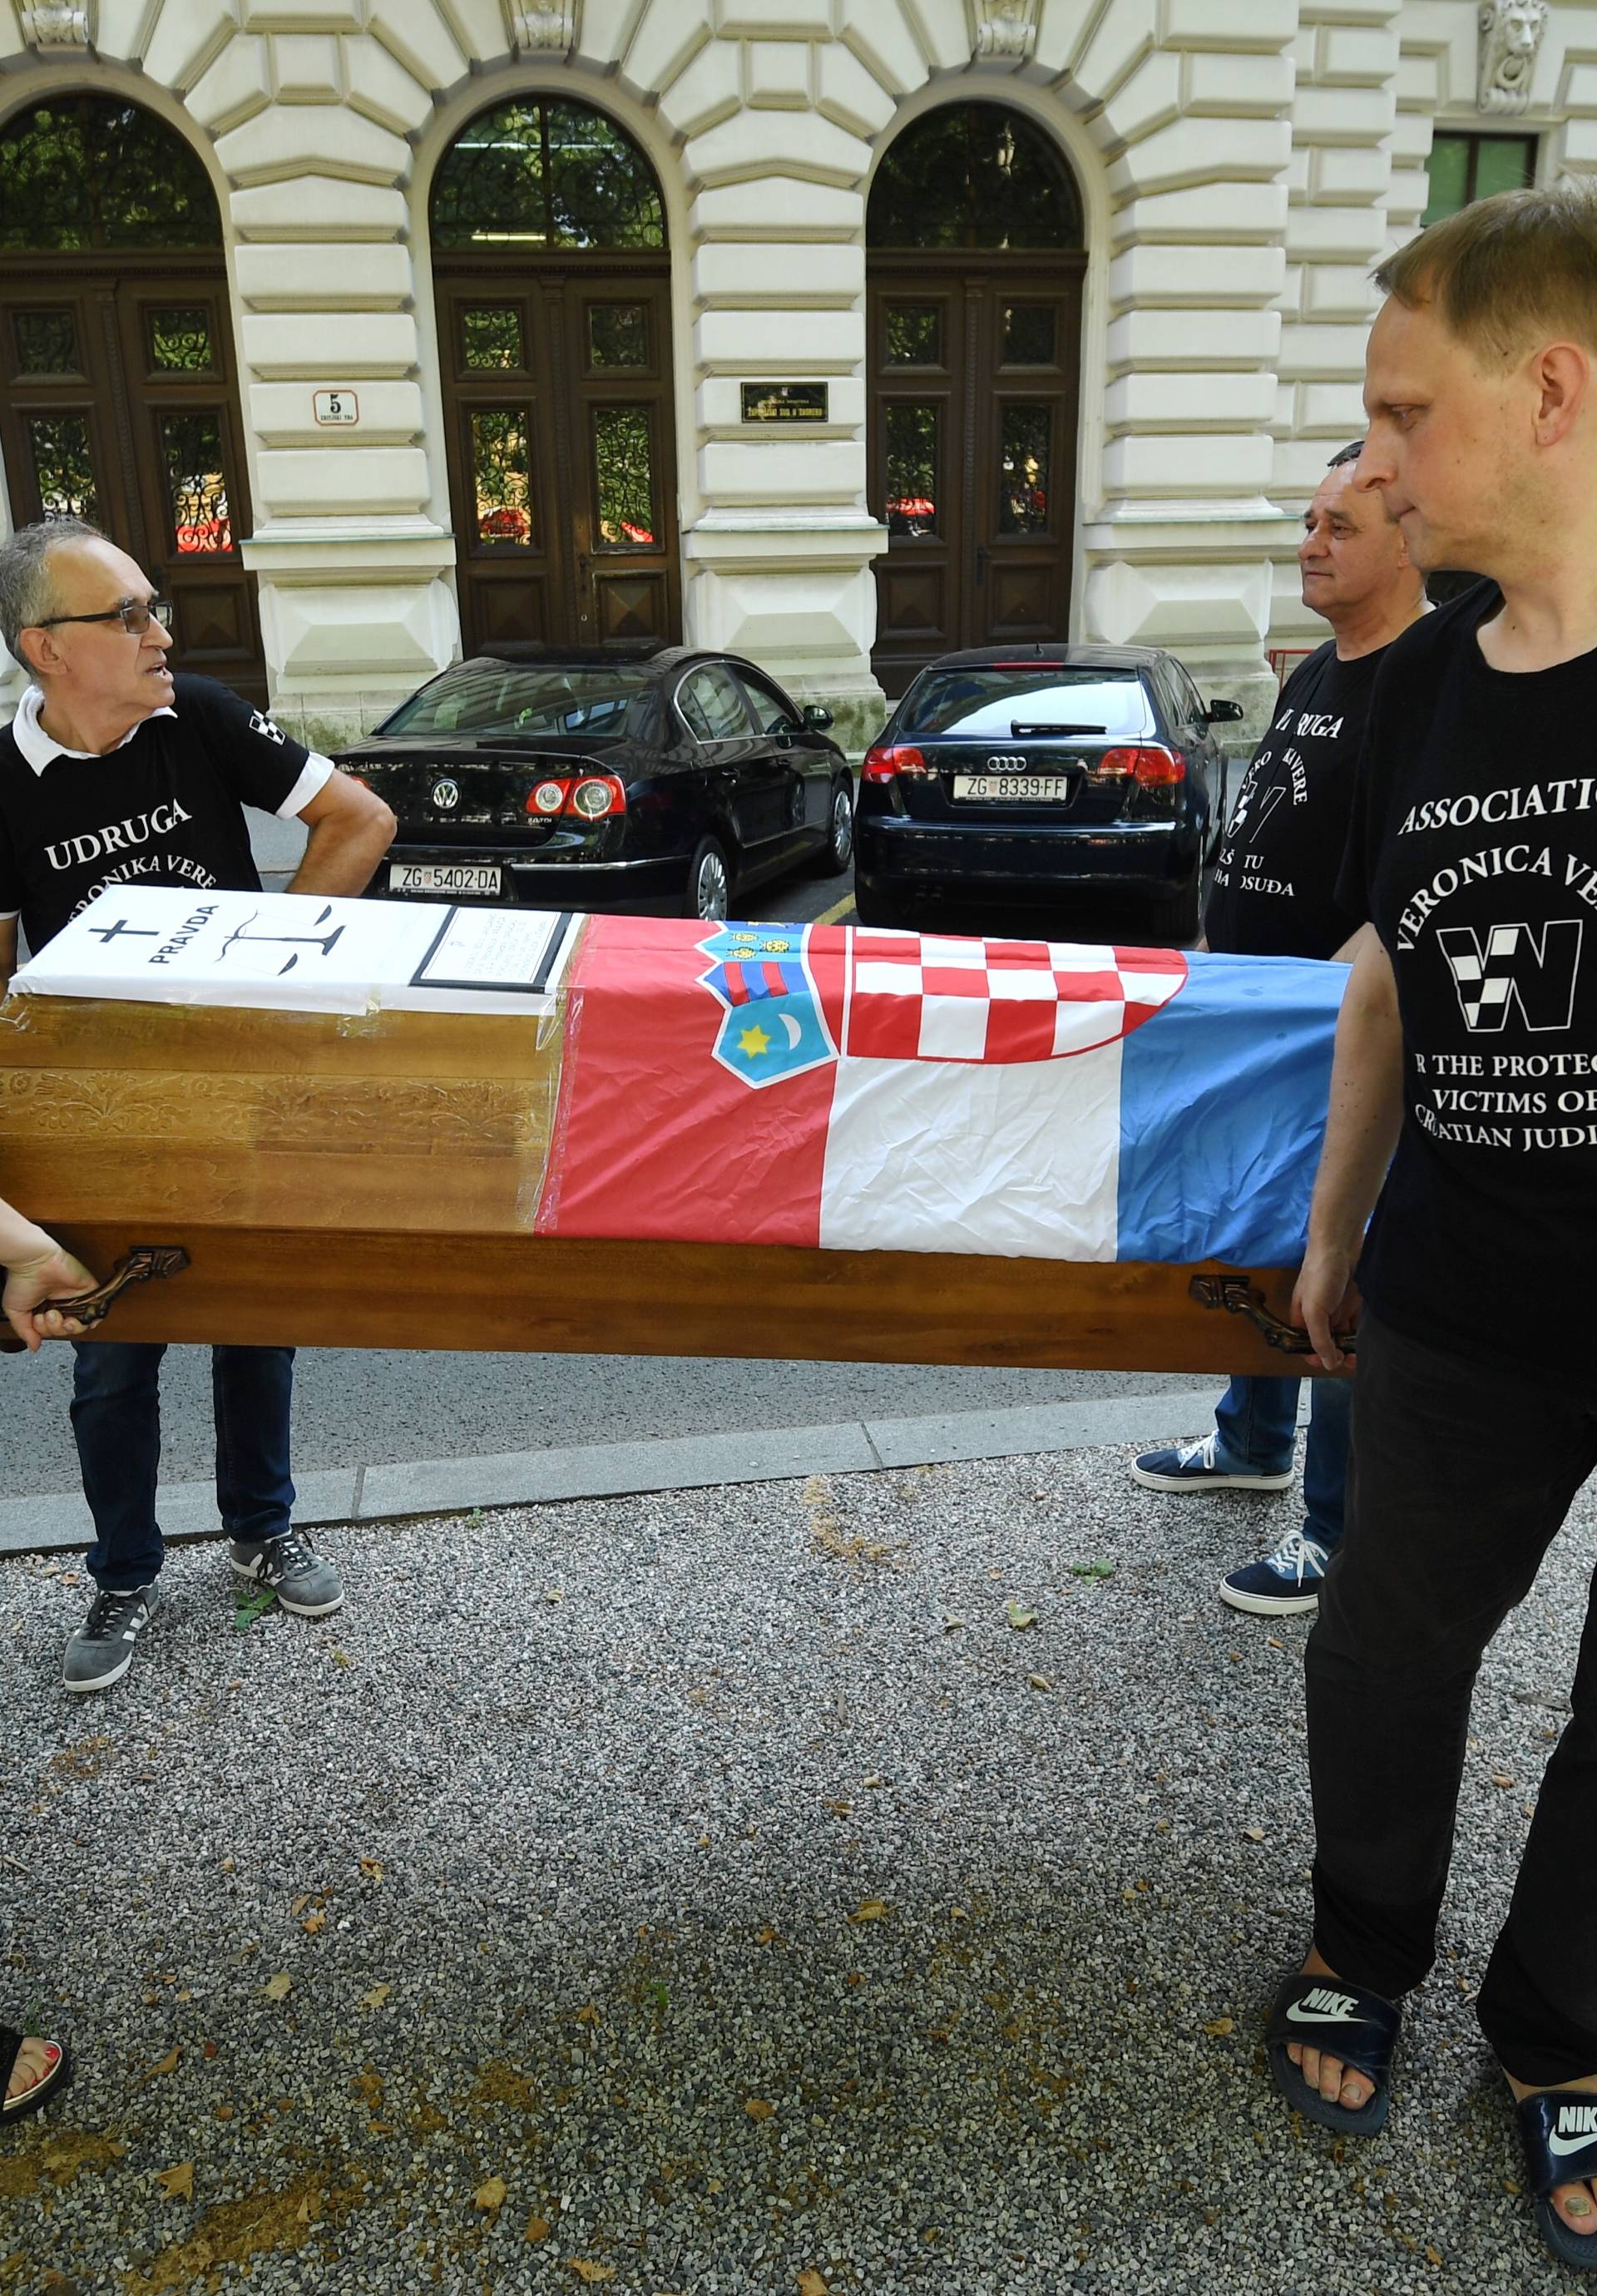 Do Osijeka s lijesom na leđima: Ja sam žrtva našeg pravosuđa'